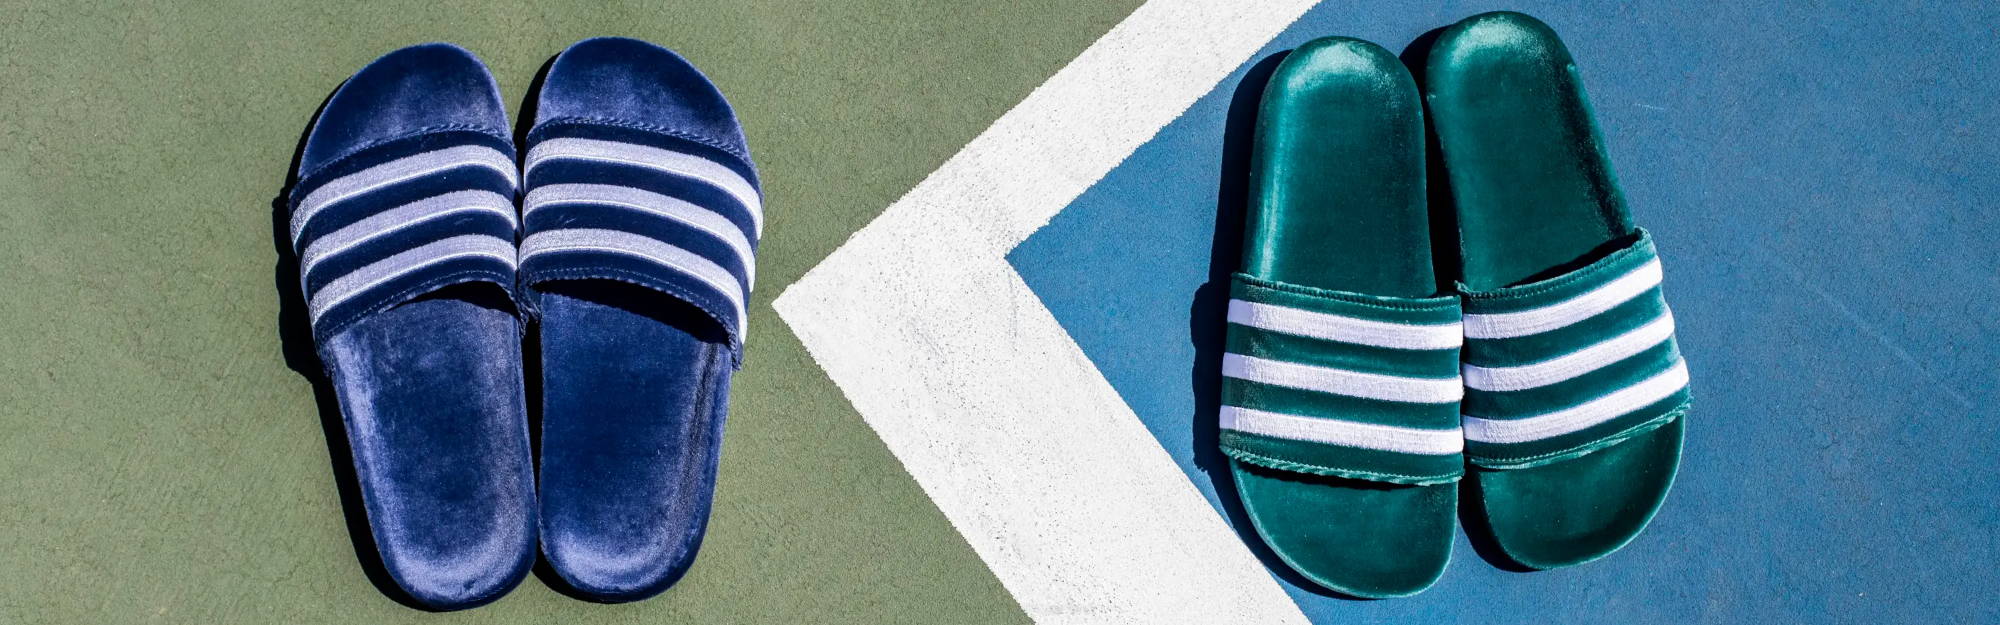 blue and green velvet adidas slides on tennis court 